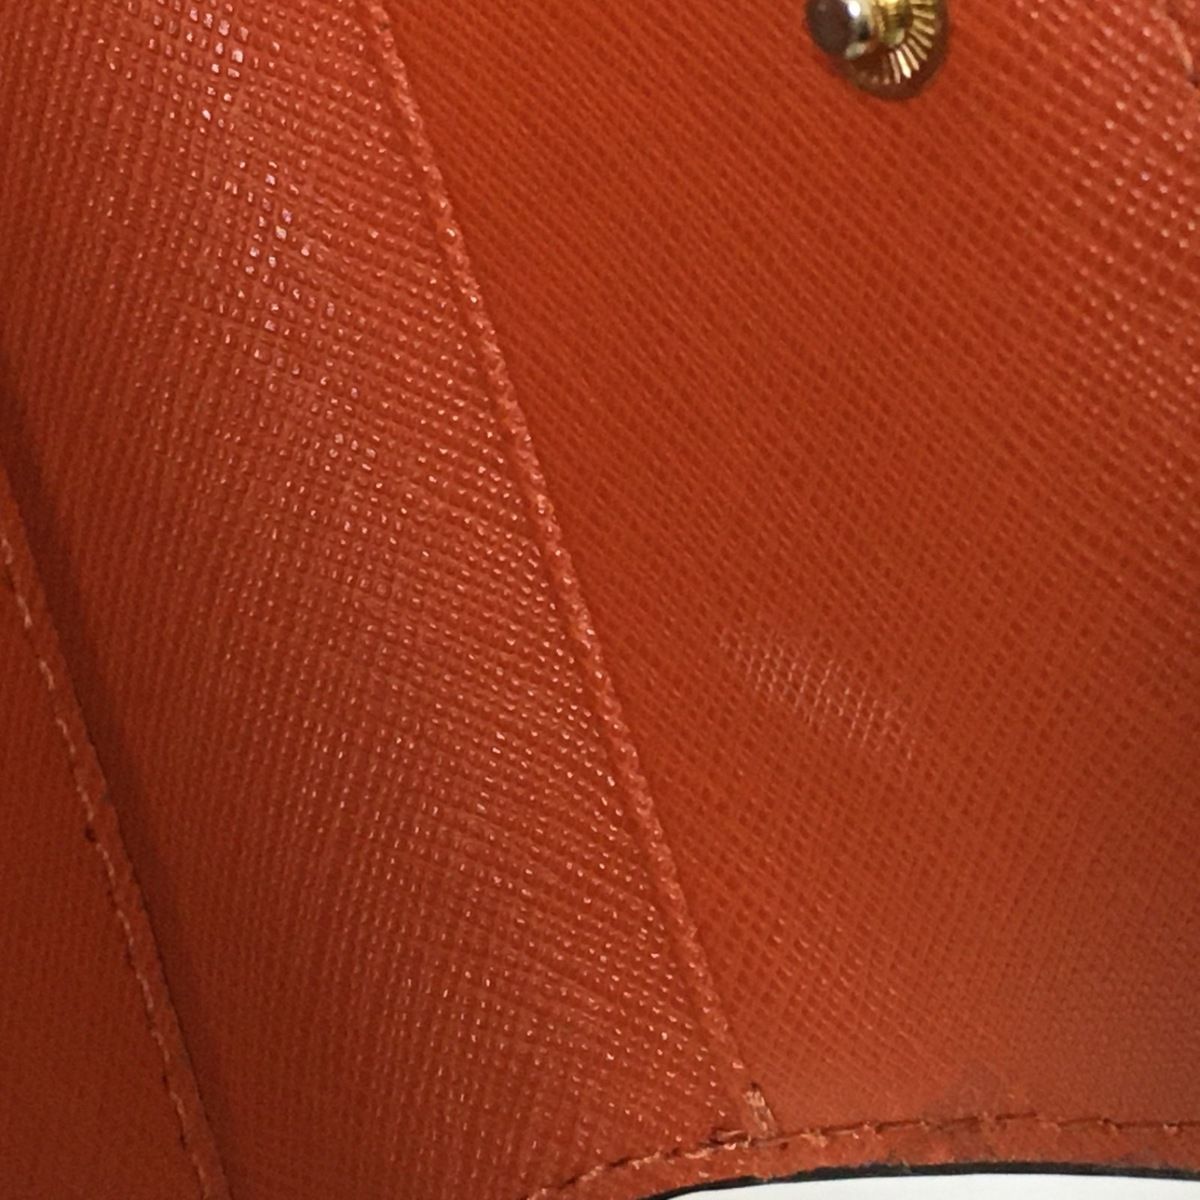 MICHAEL KORS(マイケルコース) 3つ折り財布美品 - オレンジ×ブラウン レザー